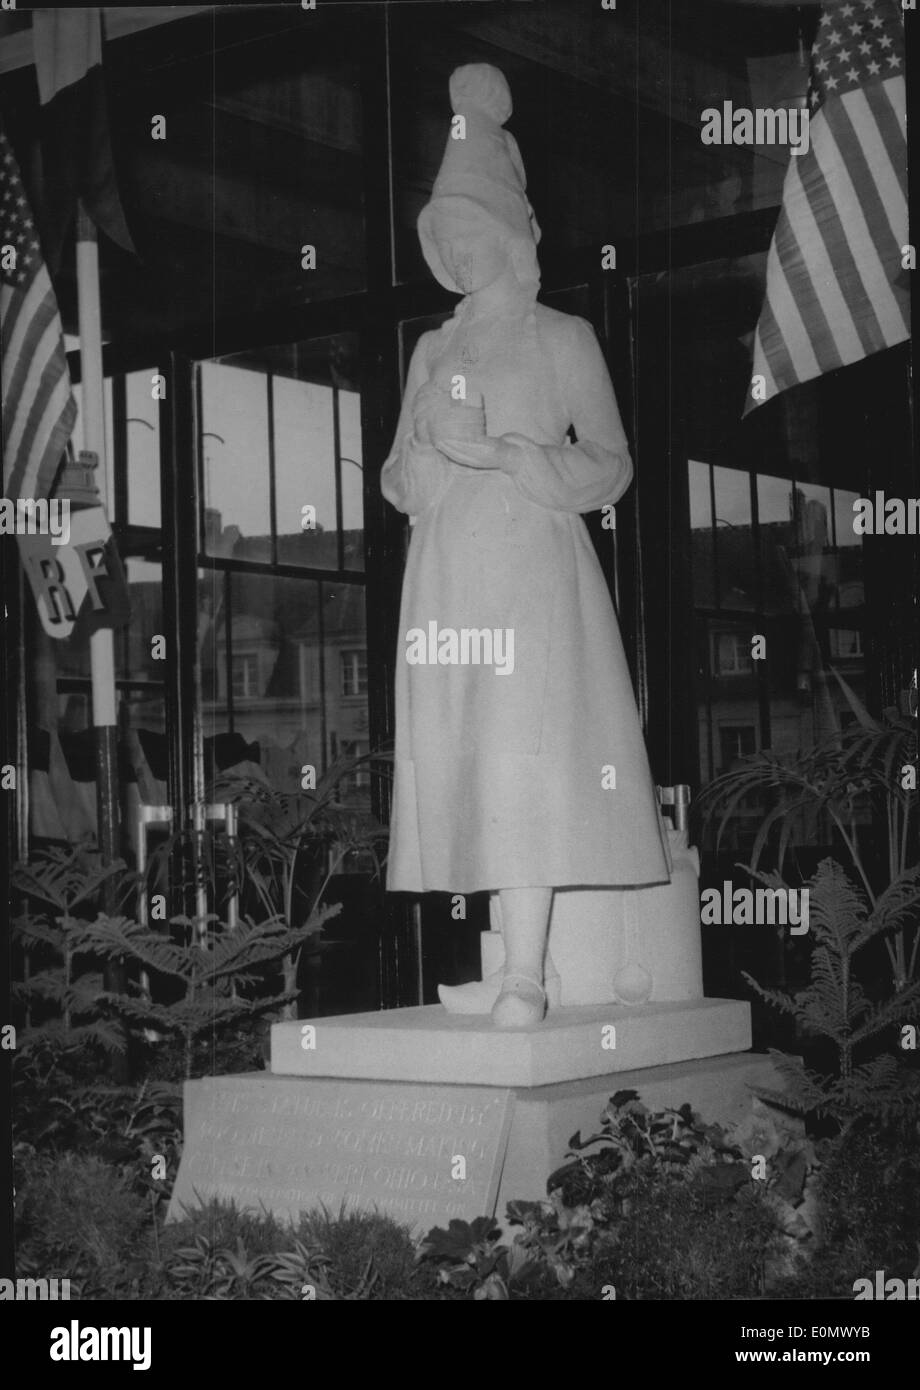 Ottobre 06, 1956 - Marie Harel che "inventata" Camembert ha nuova statua in città nativa: Marie Harel, una contadina francese della donna che ha fatto, come la storia va, il primo camembert nel XVIII secolo, aveva una statua aveva una statua nella sua città nativa vimoutiers (Normandia) prima della guerra. Questa statua è stata distrutta durante i bombardamenti aerei, uno nuovo è stata svelata l'altro giorno sullo stesso posto per la gloria della ''inventore' del famoso formaggio francese. La foto mostra la nuova statua di Marie Harel eretto a vimoutiers, in Normandia. Foto Stock